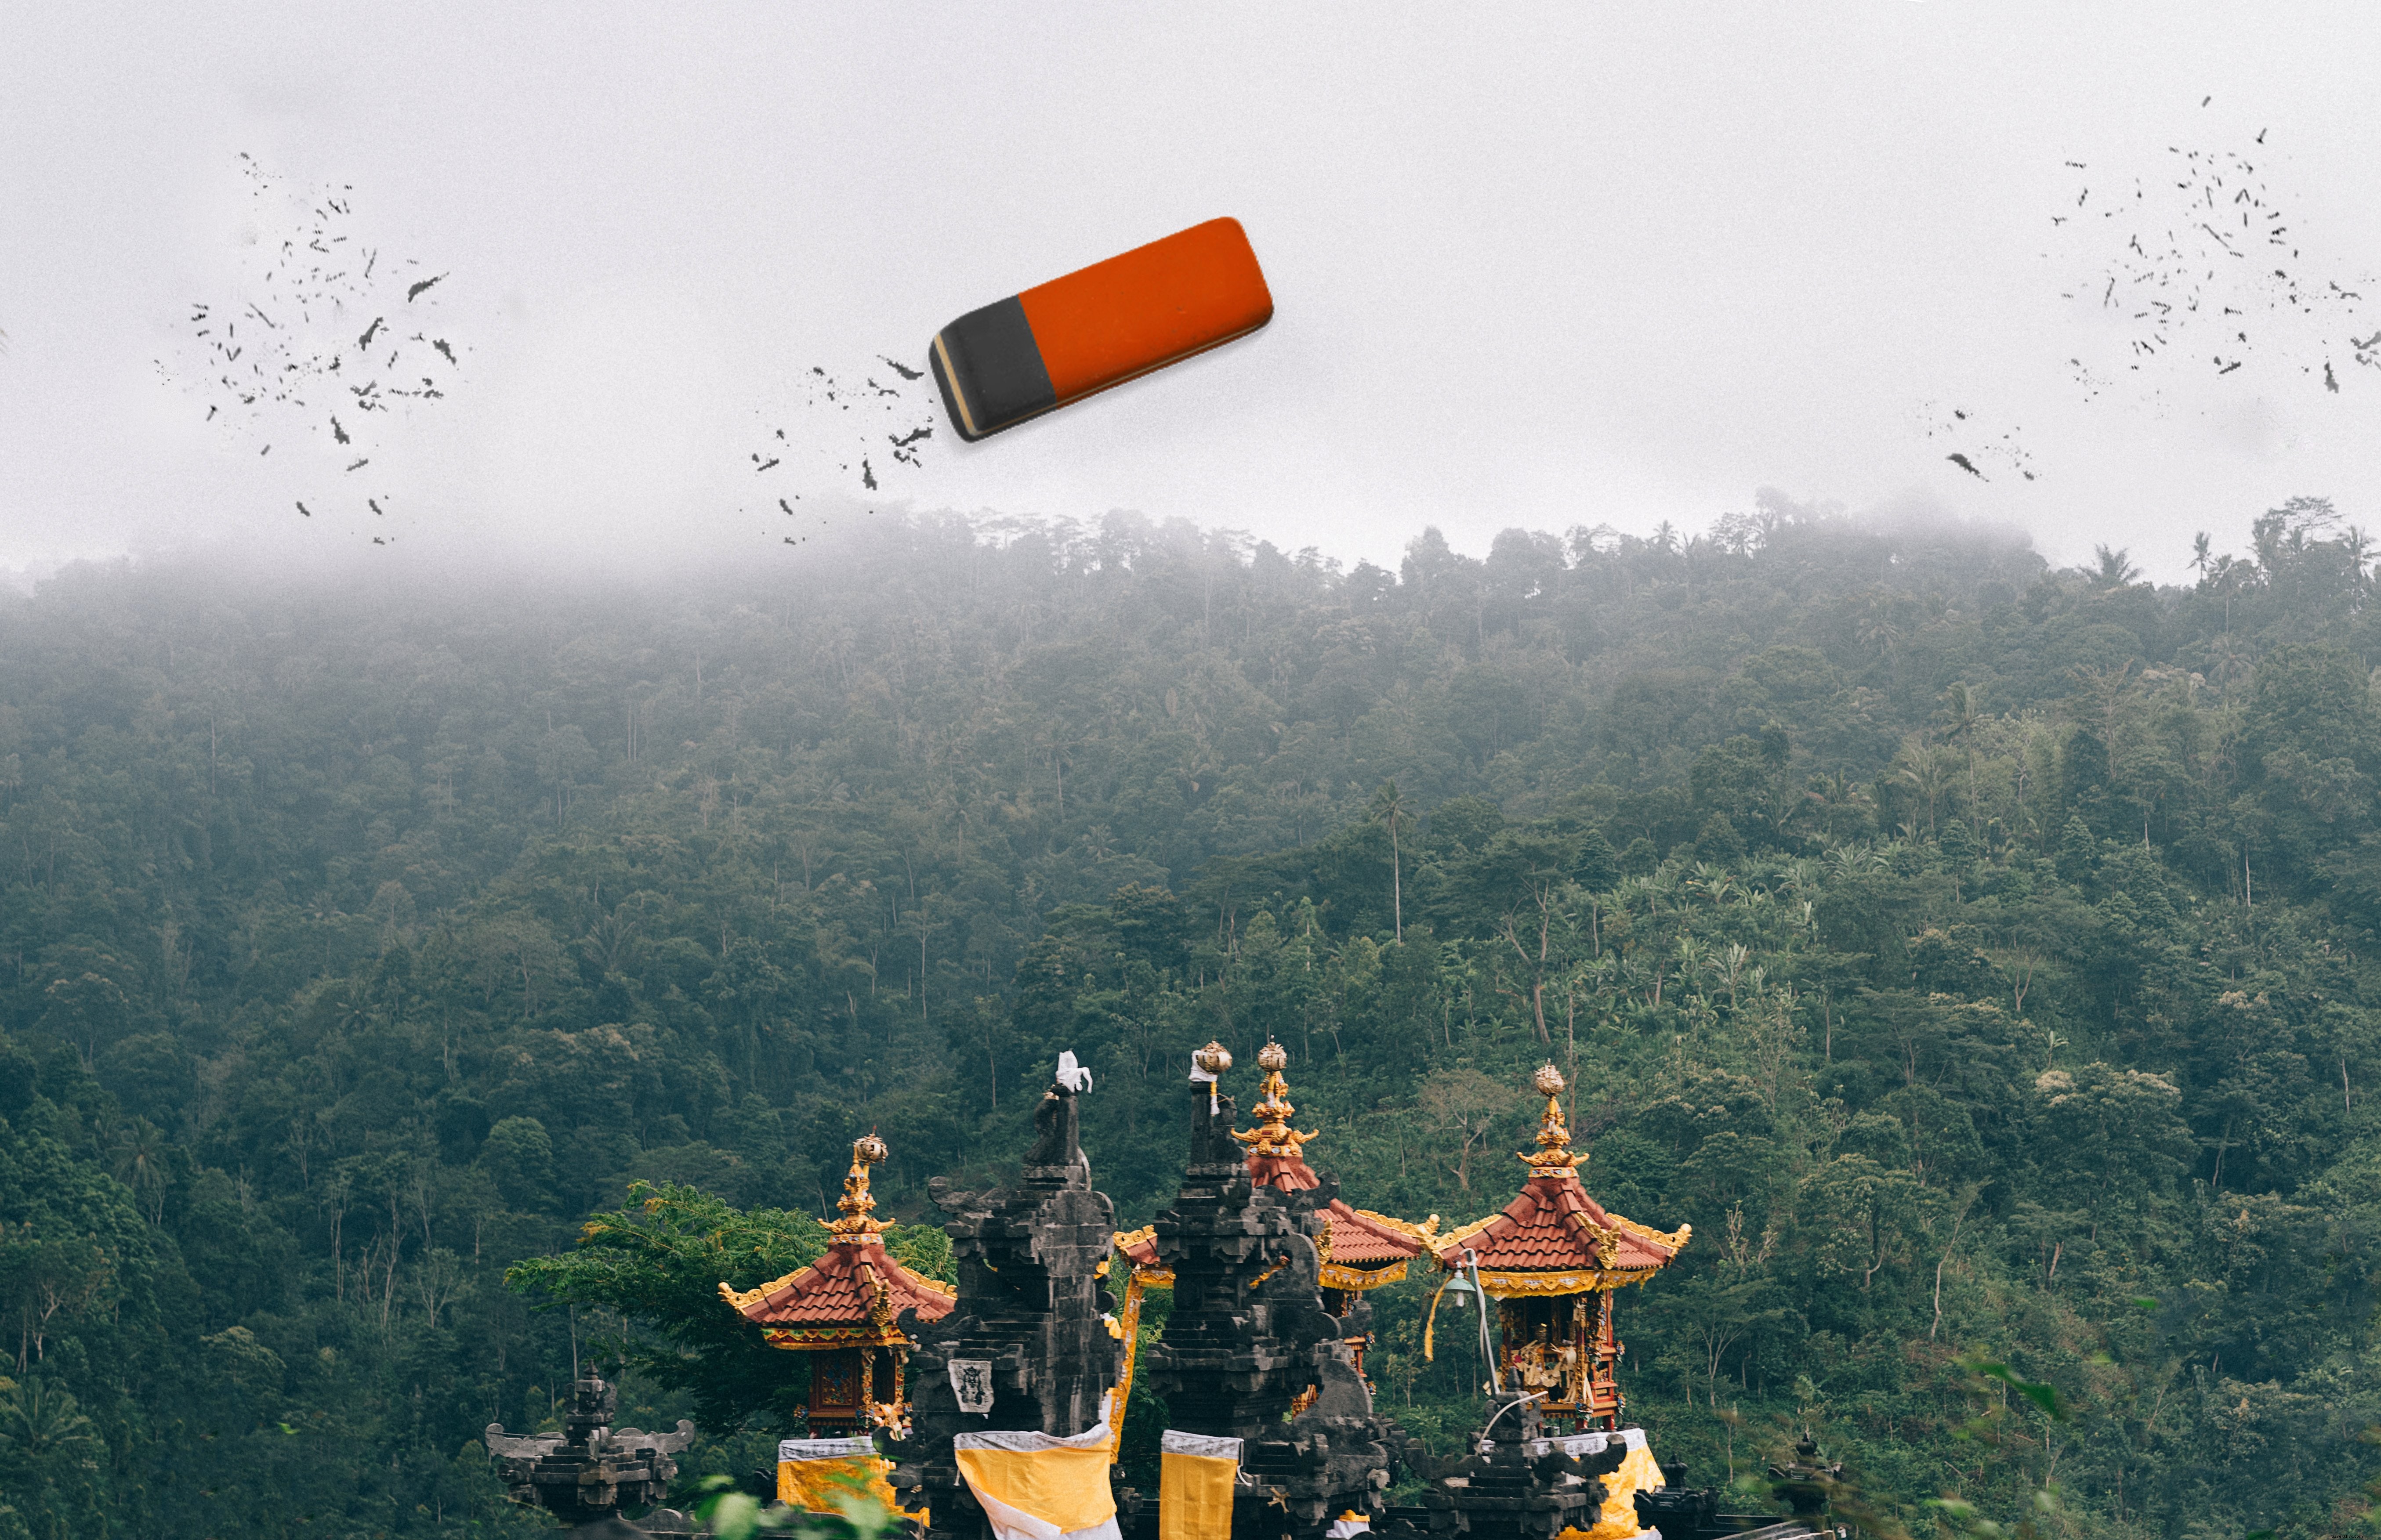 曇った寺院の写真のイリュージョン写真の消しゴム 